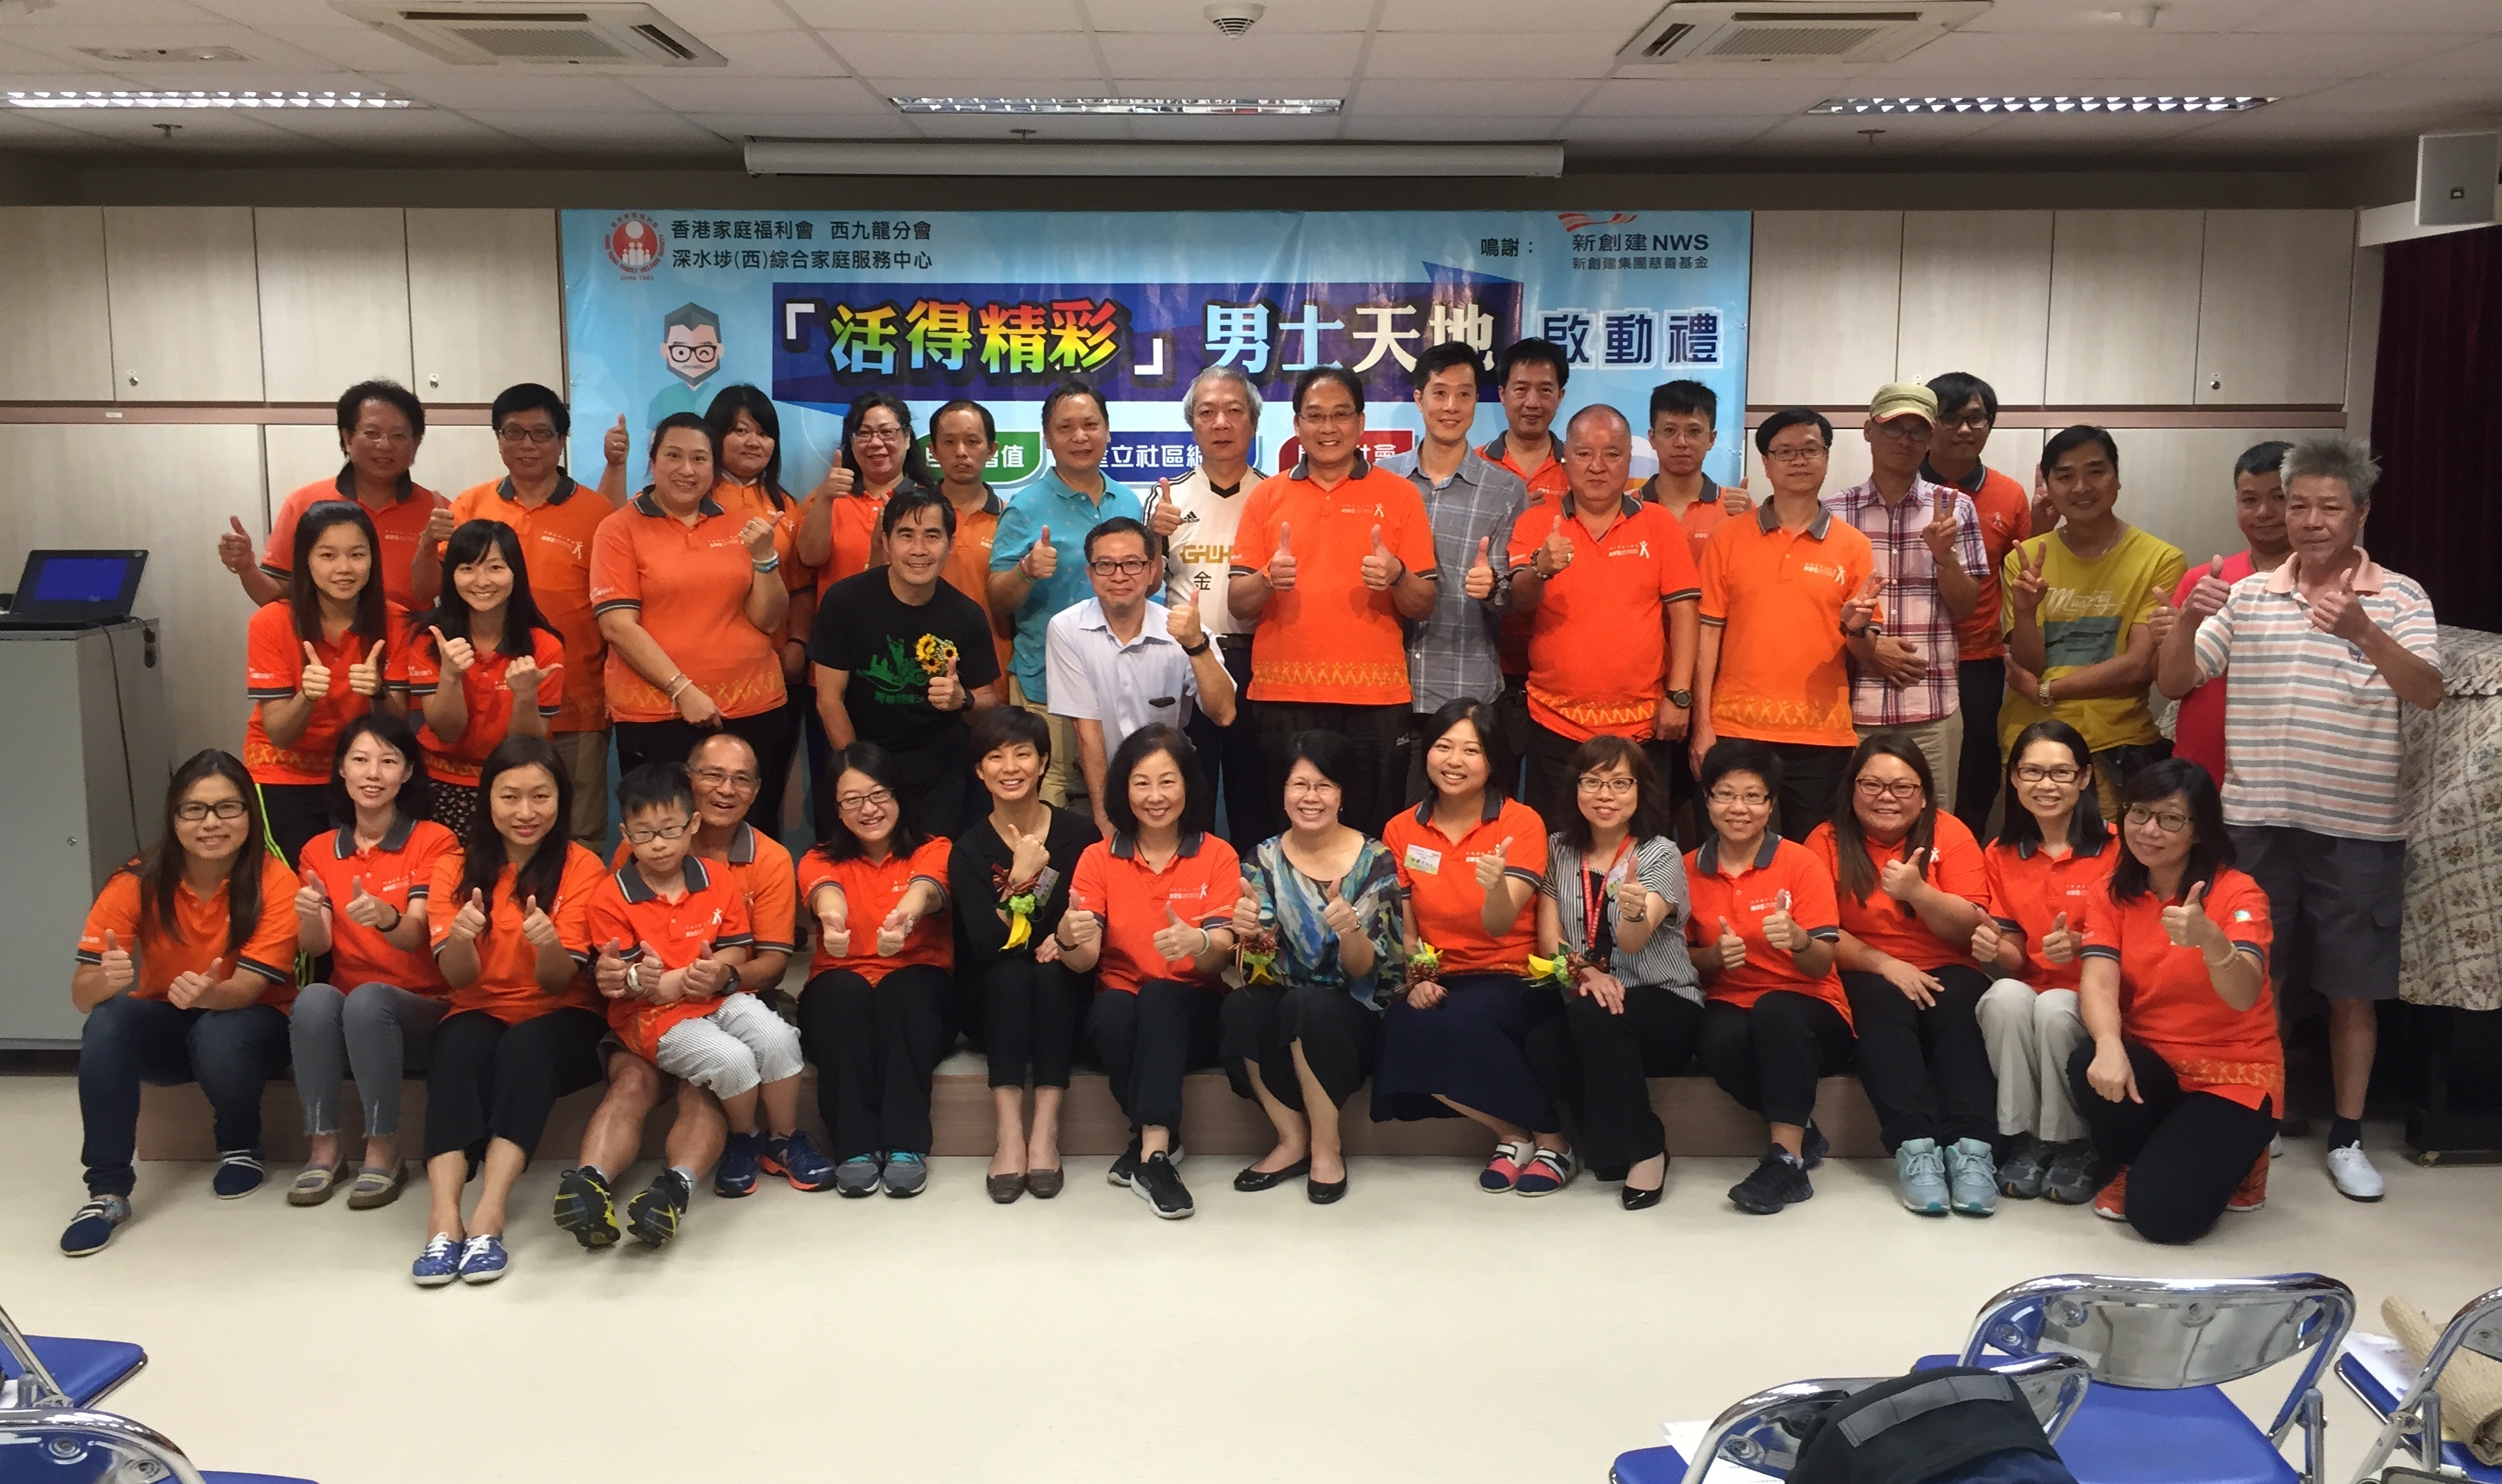 助基层男士自我增值 回馈社群 新创建集团与香港家庭福利会合办社区计划